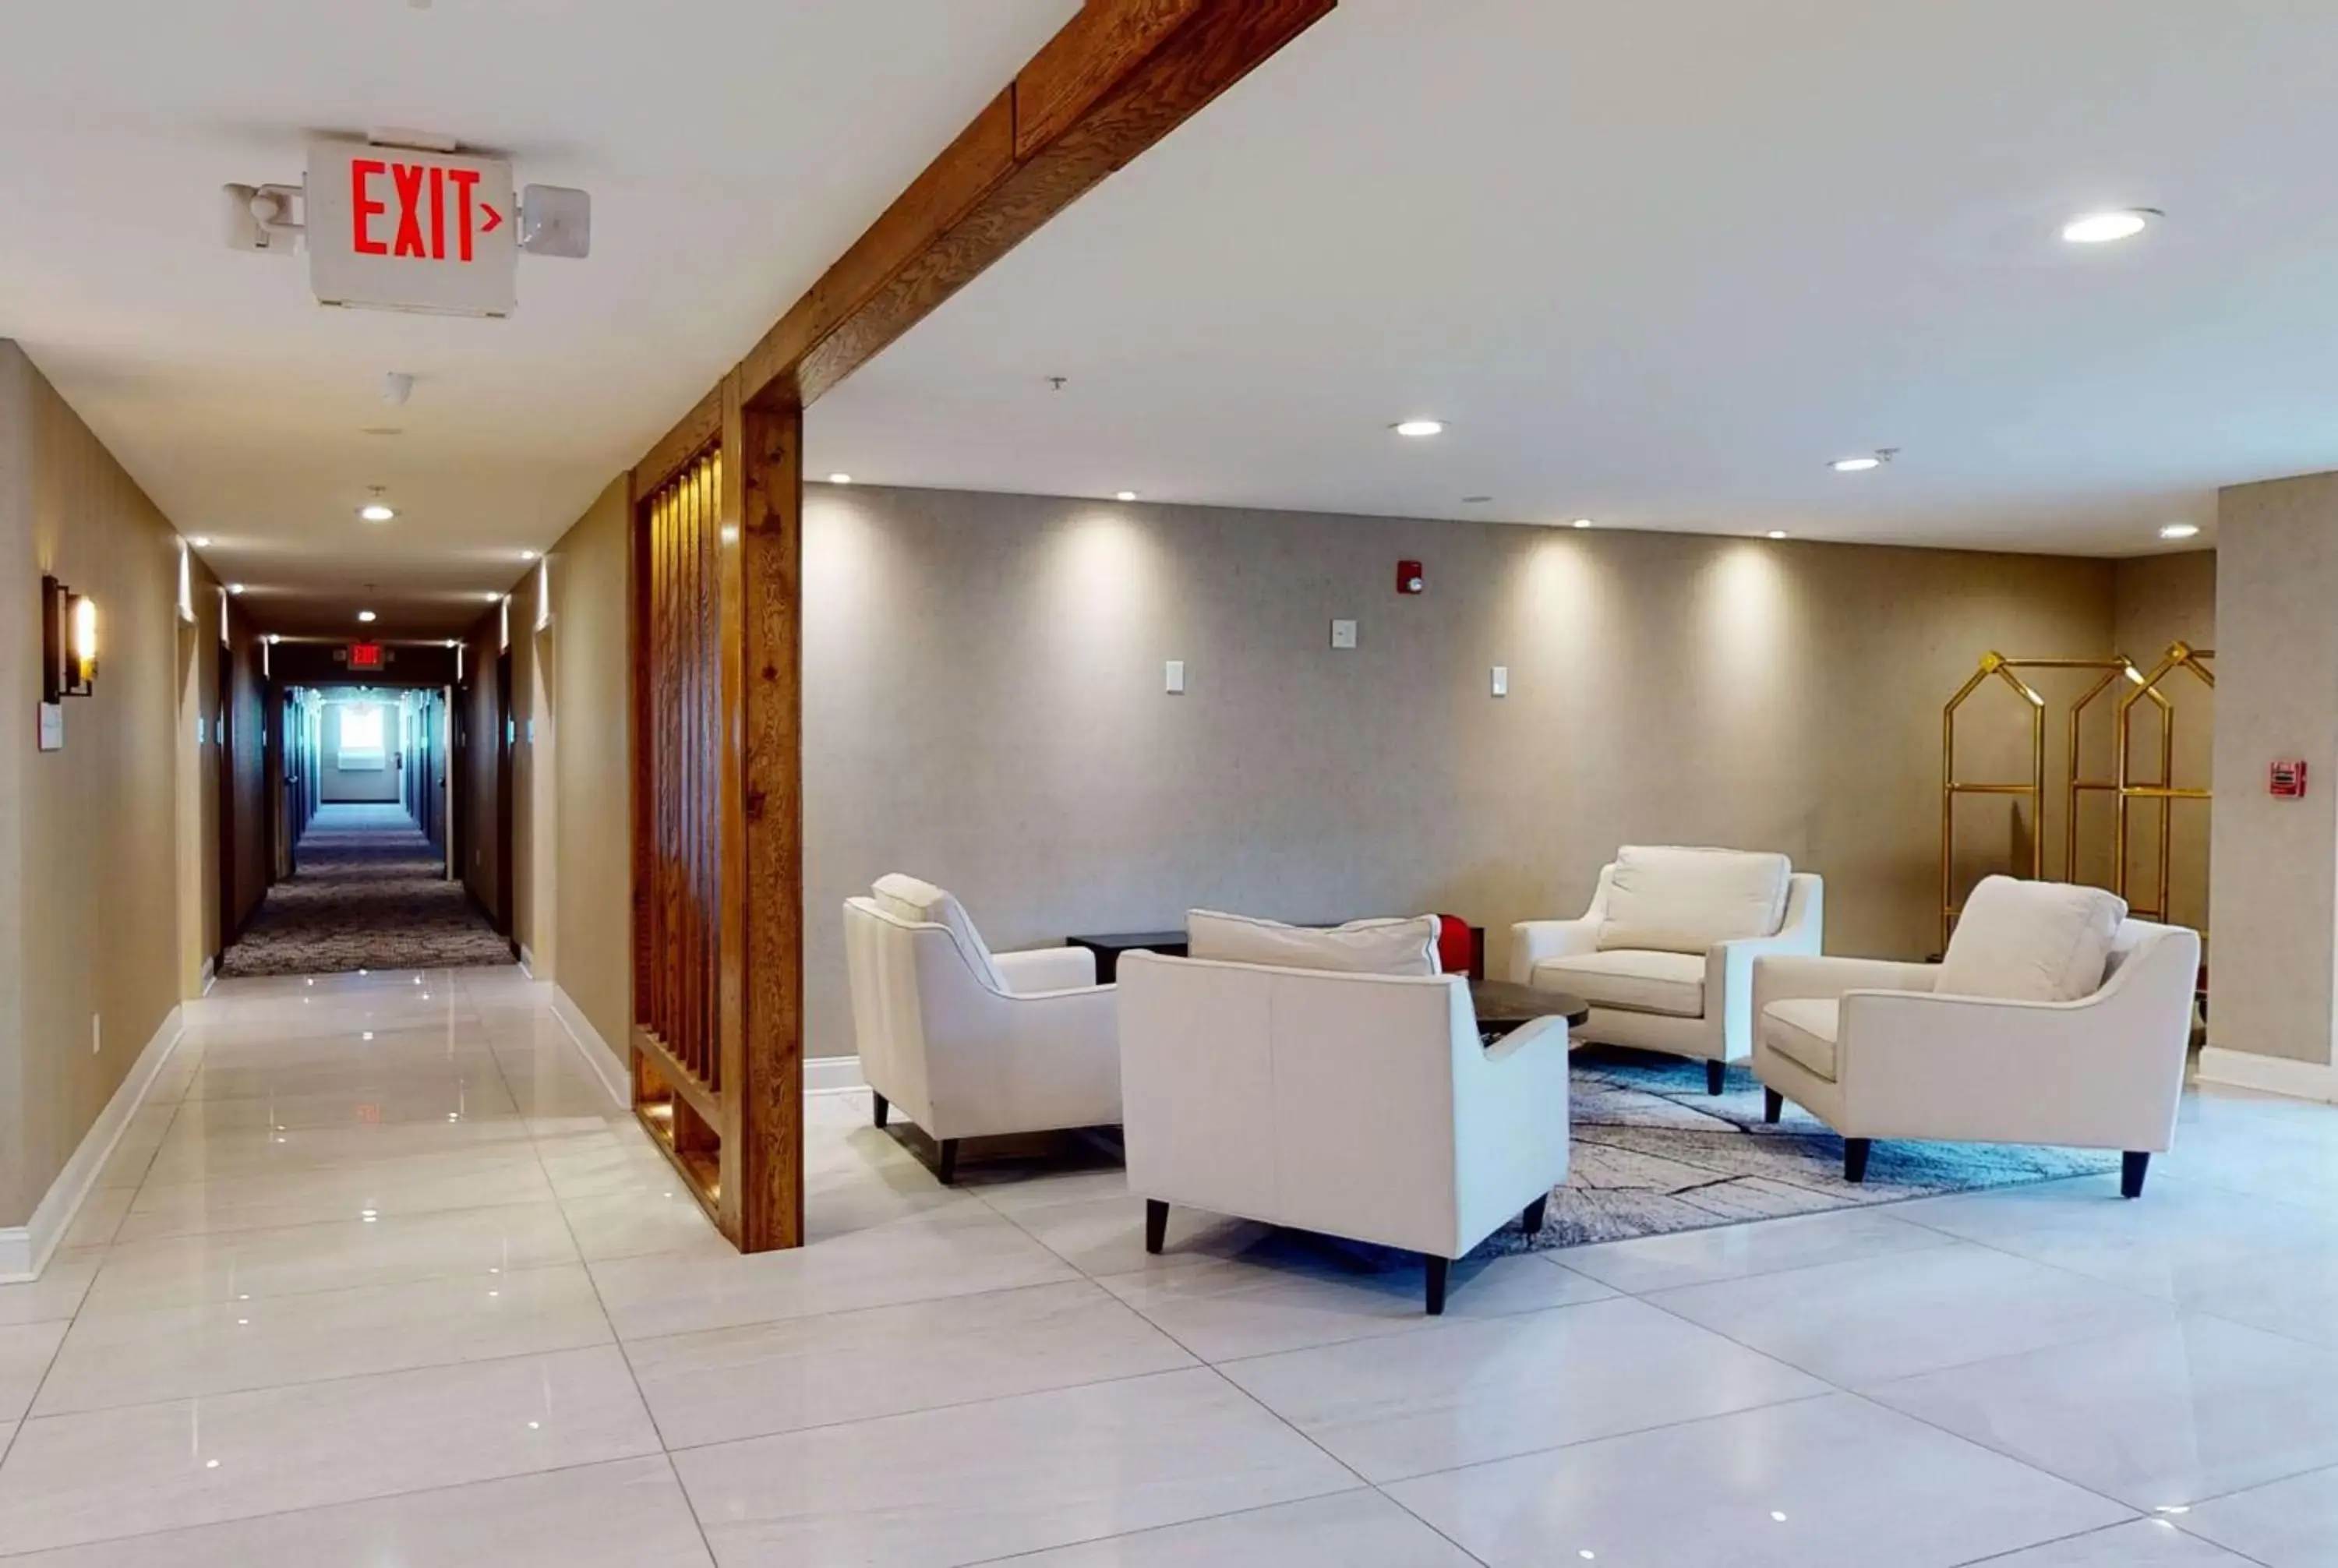 Lobby or reception, Lobby/Reception in Ramada by Wyndham Strasburg - Shenandoah Valley